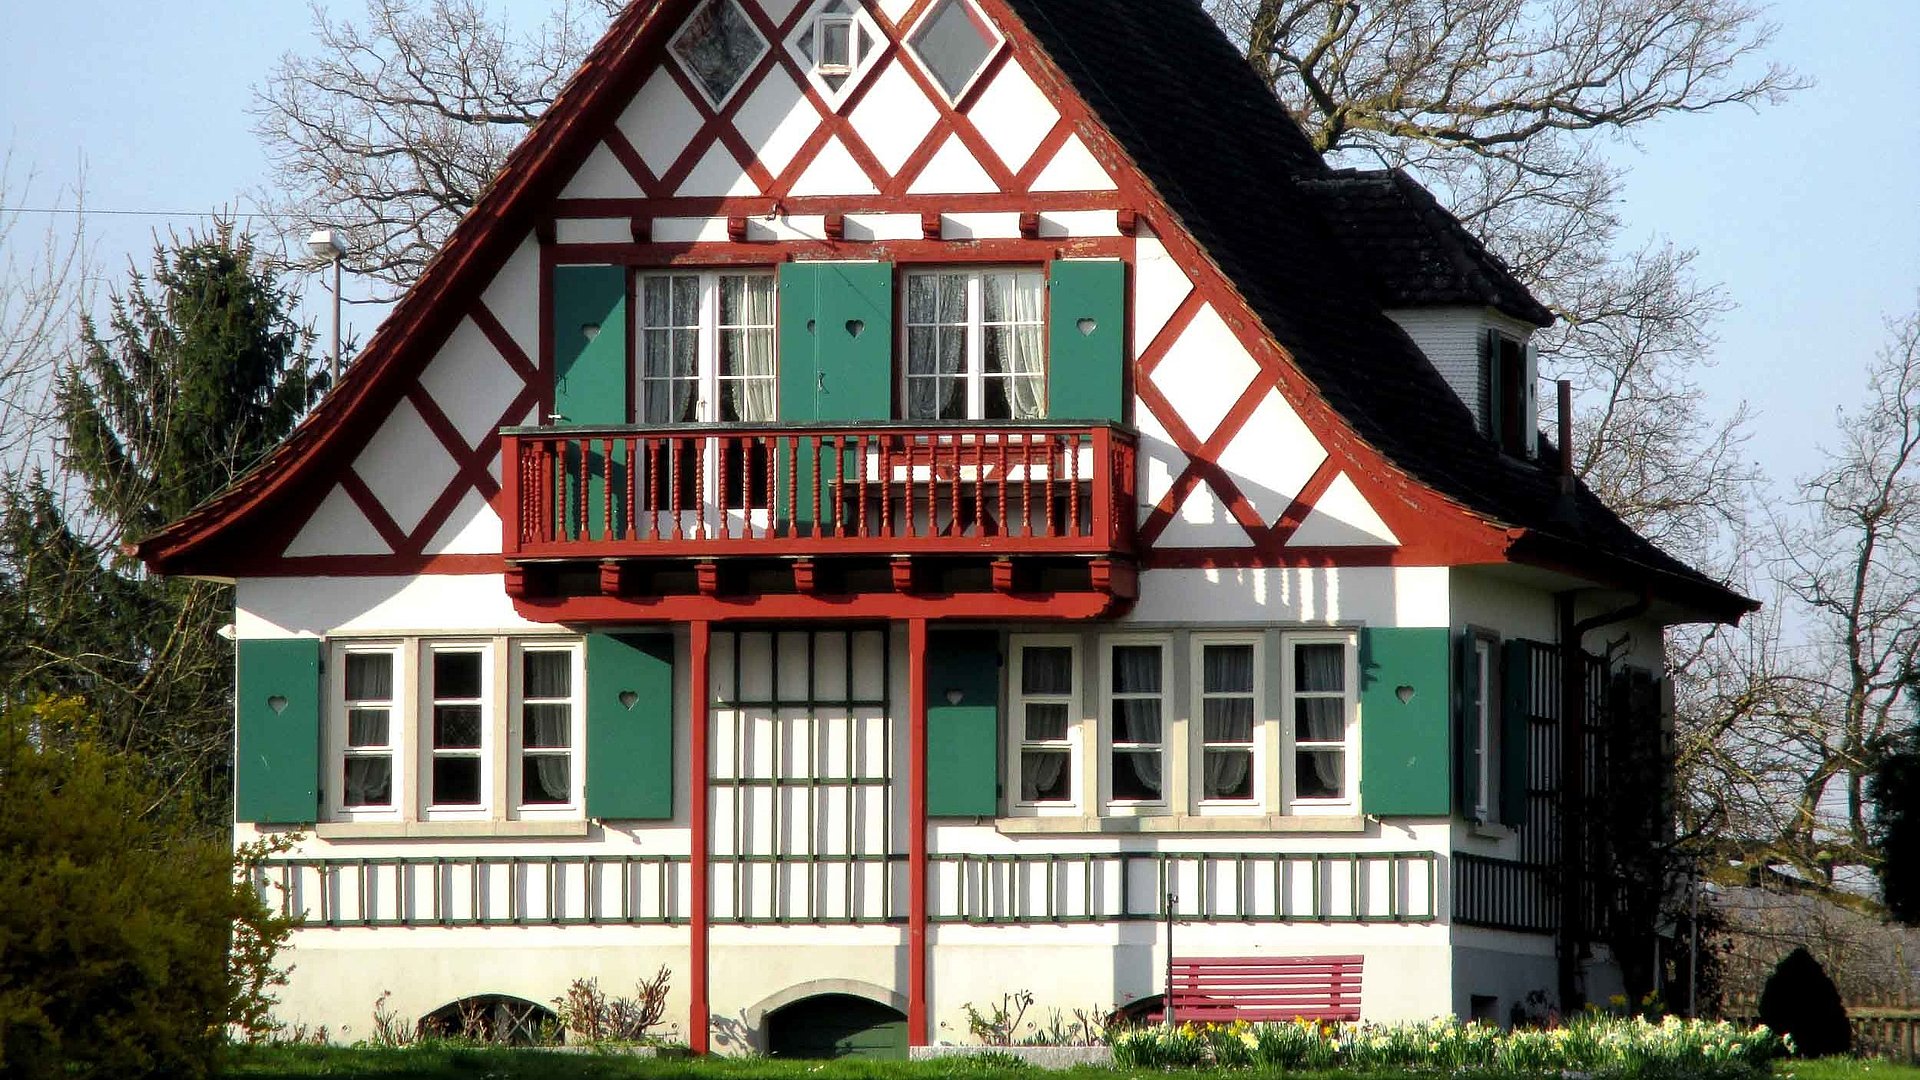 Exklusive Ferienwohnungen im Fichtelgebirge - Bayerisches Haus mit Balkon unter klarem Himmel, grünem Garten und Bäumen im Hintergrund